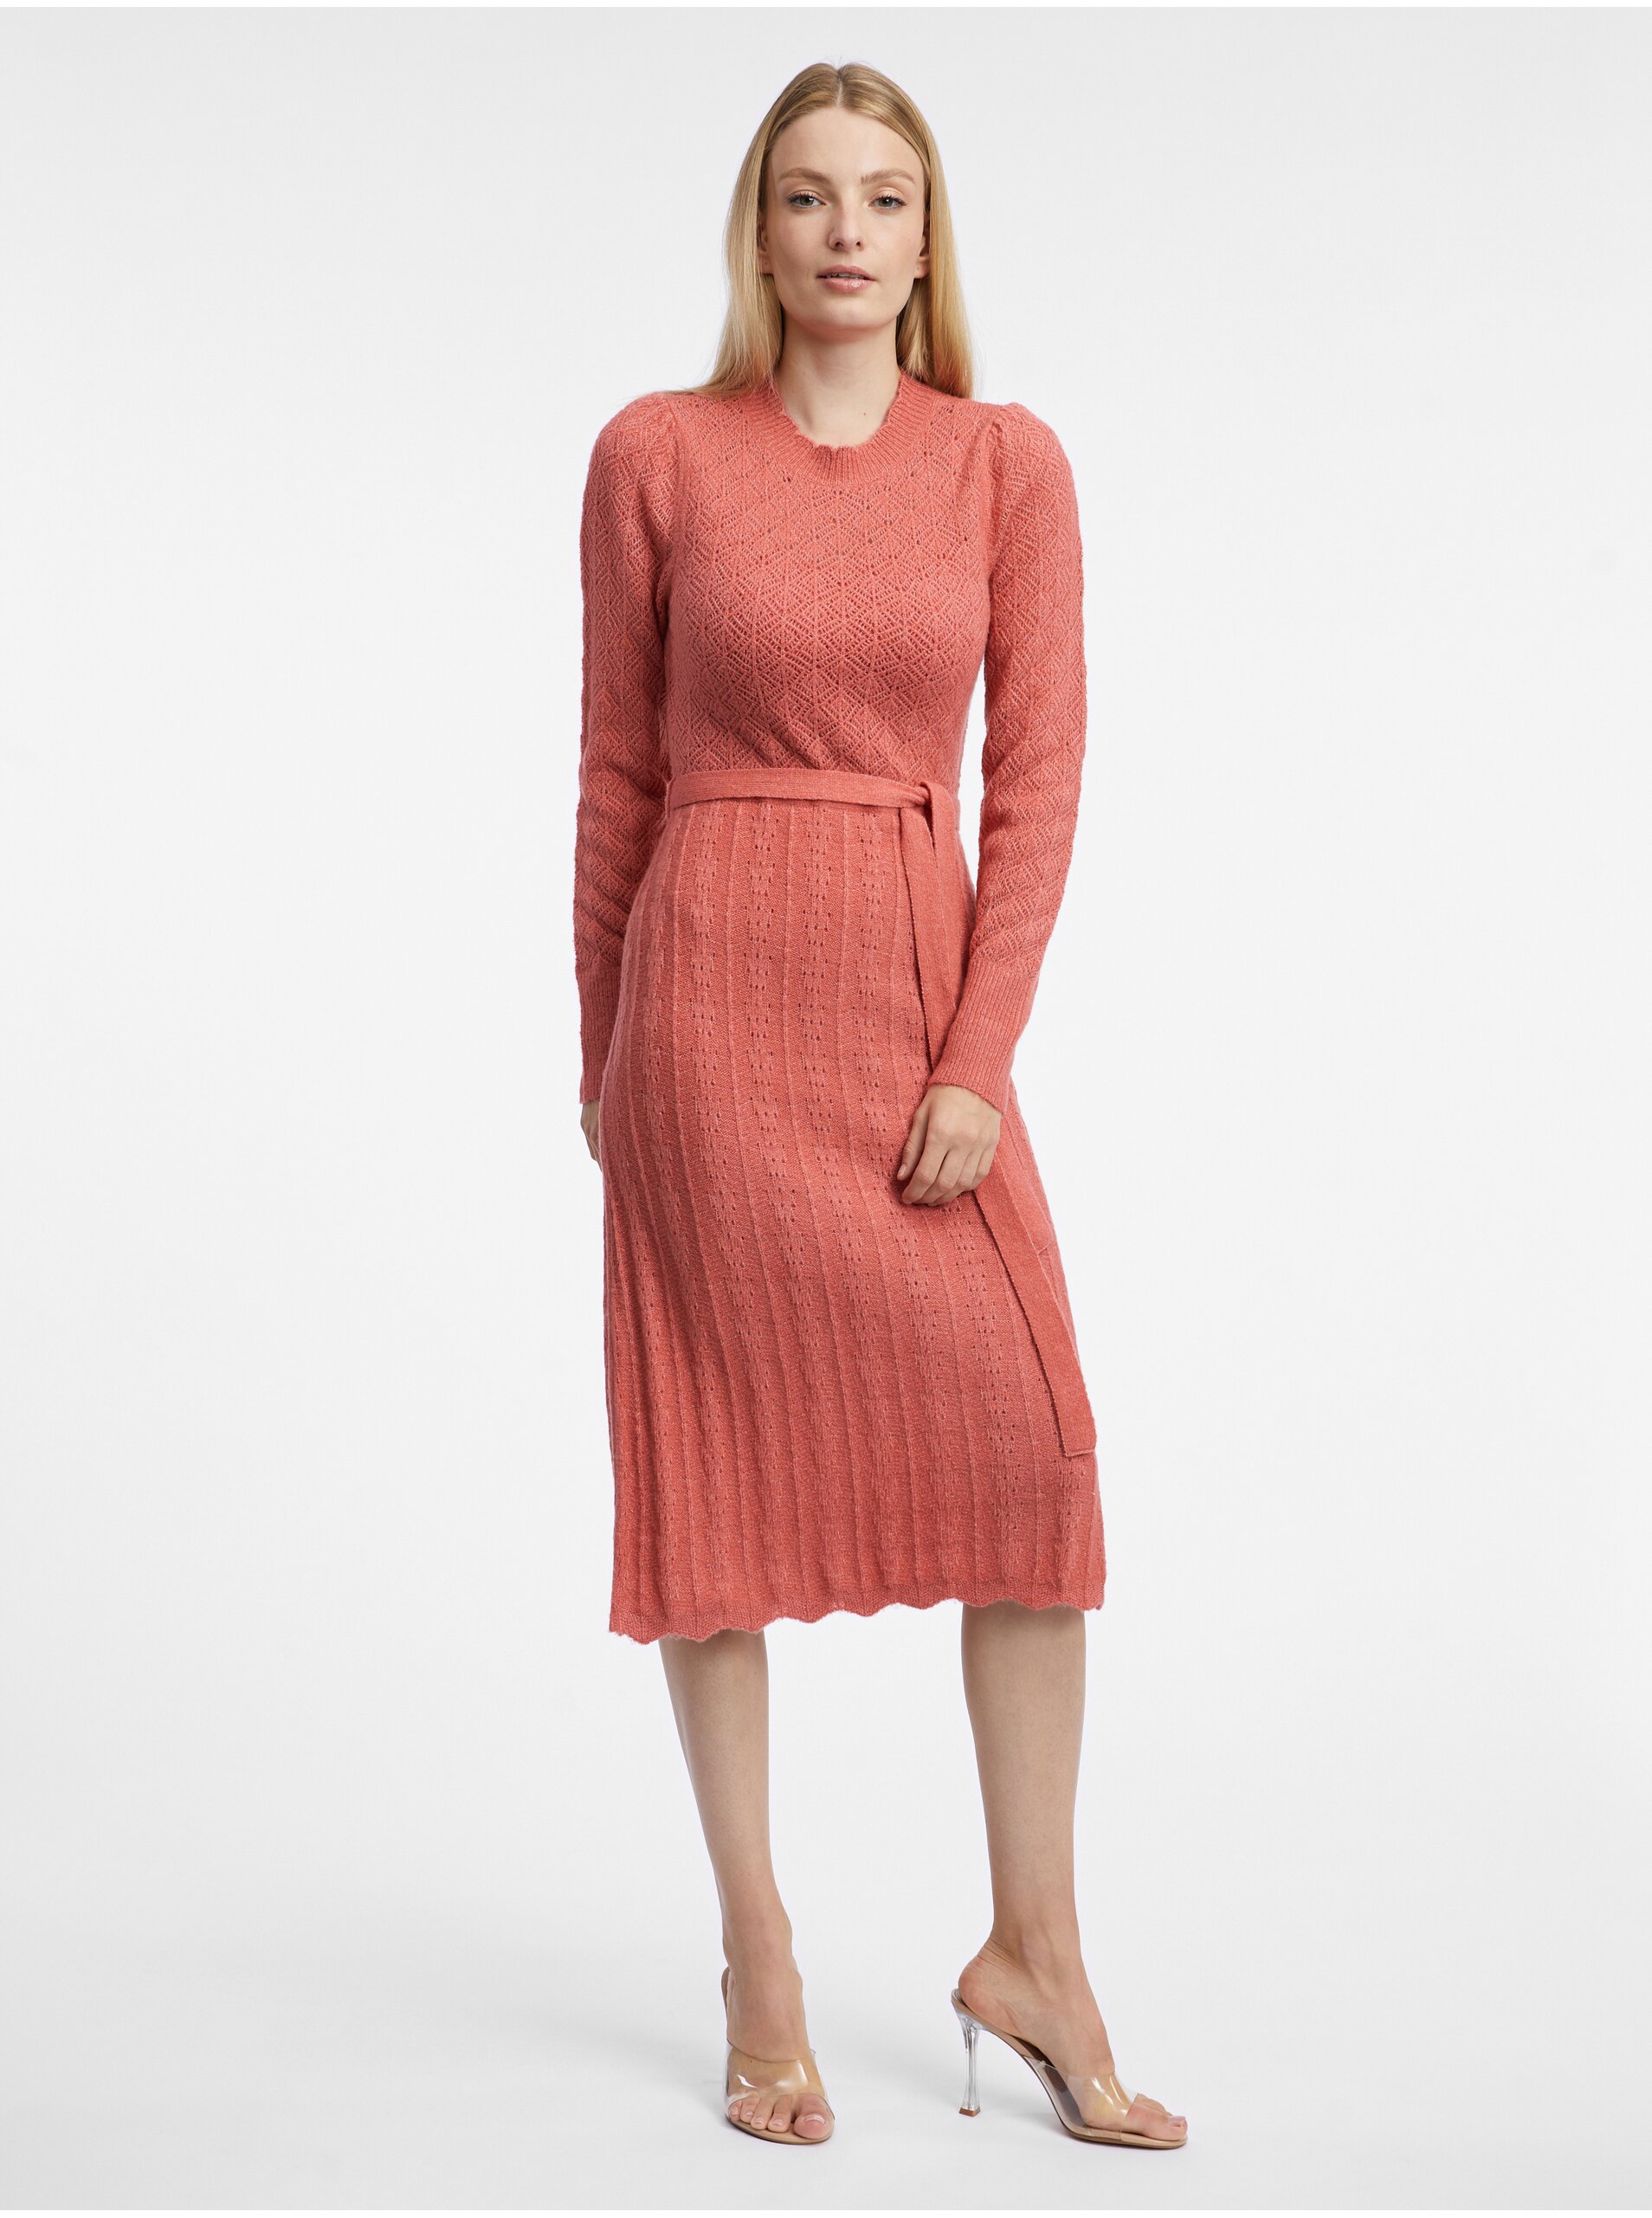 E-shop Cihlové dámské svetrové šaty s příměsí vlny ORSAY